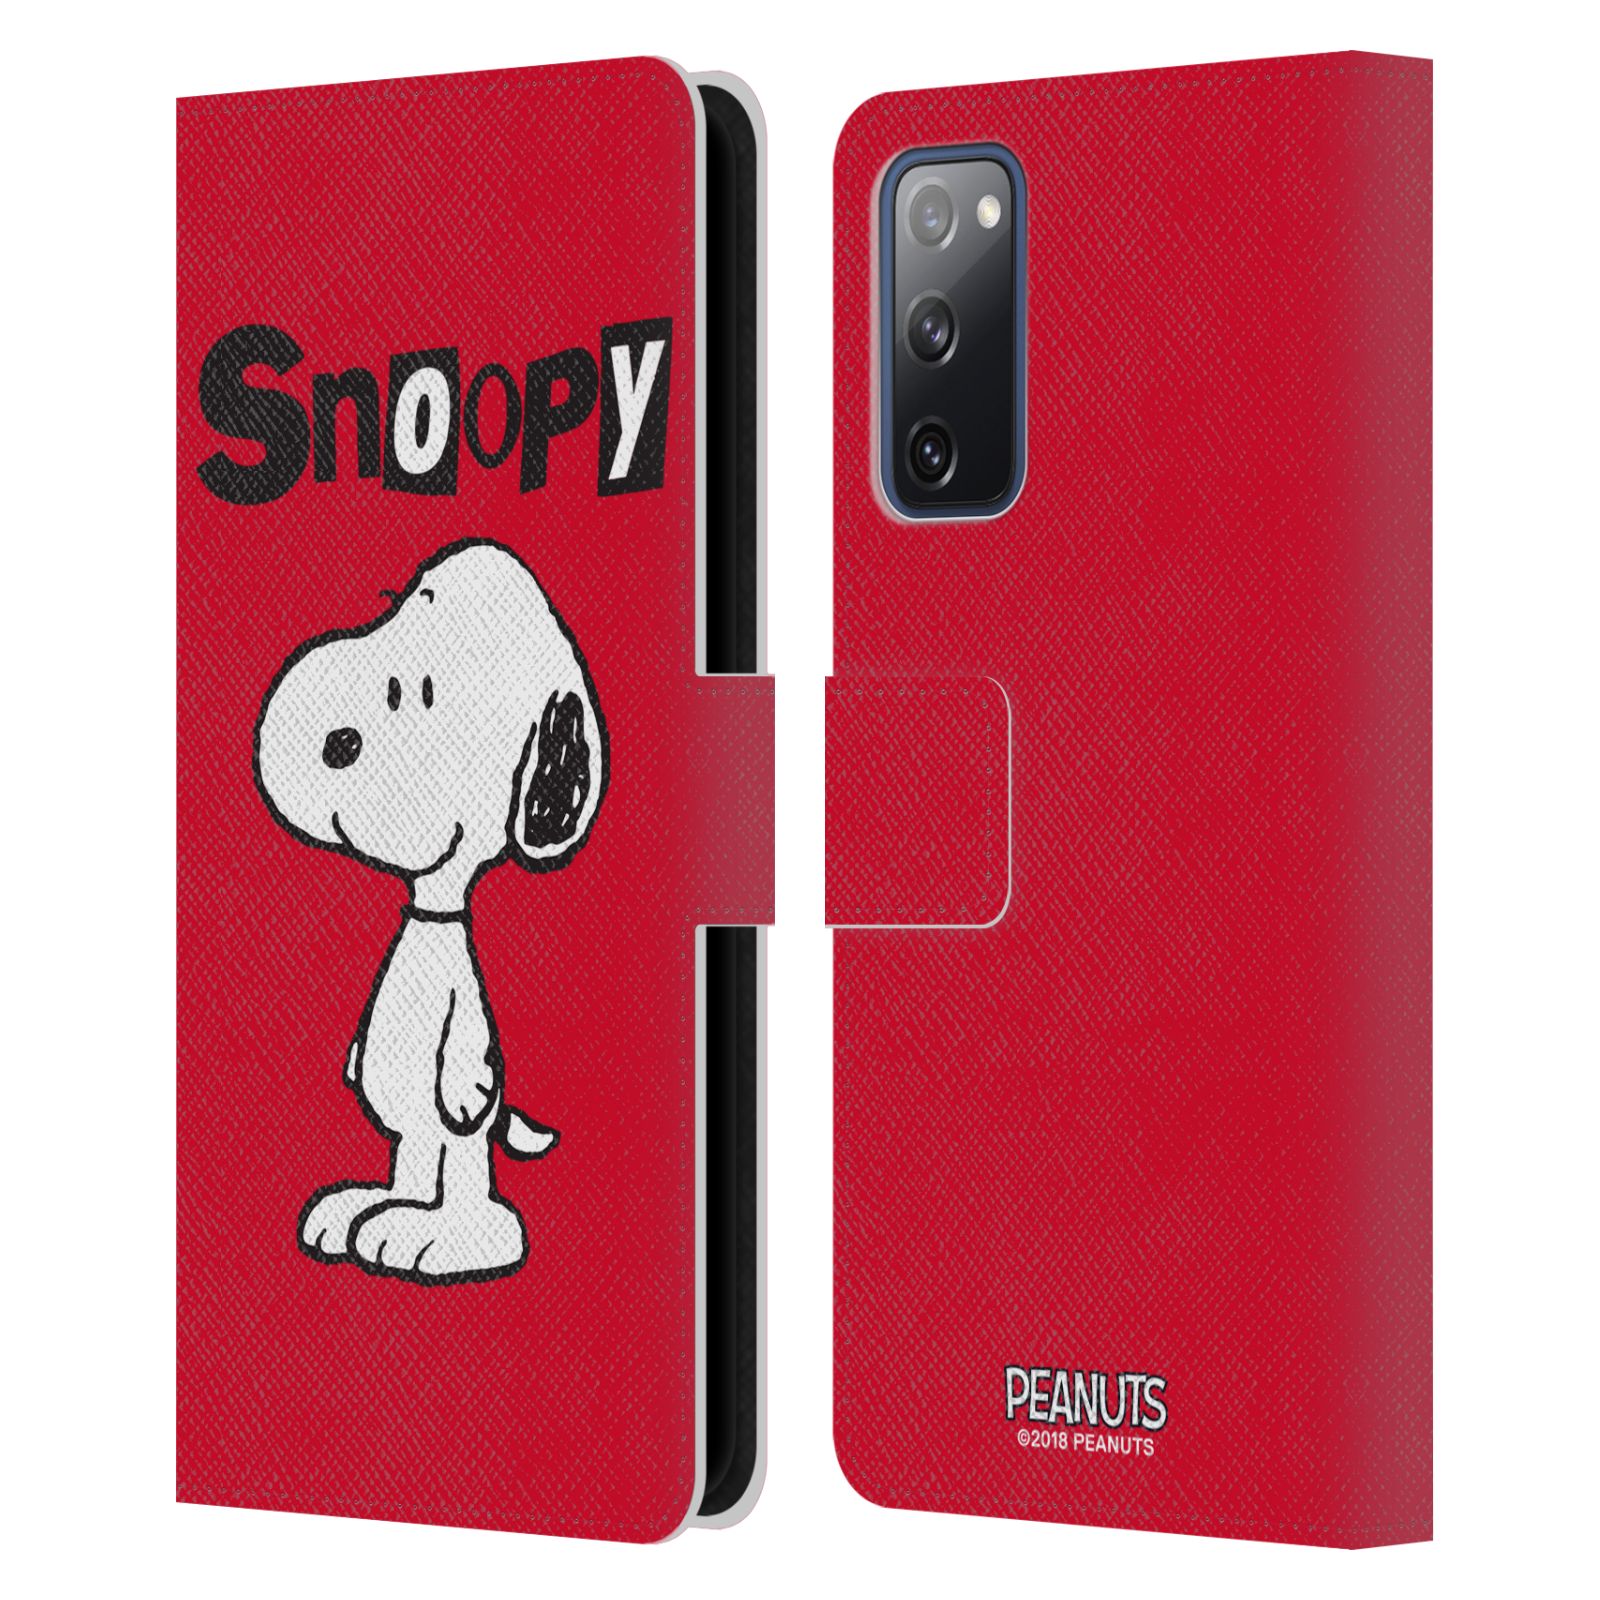 Pouzdro na mobil Samsung Galaxy S20 FE / S20 FE 5G  - HEAD CASE - Peanuts - Snoopy červená